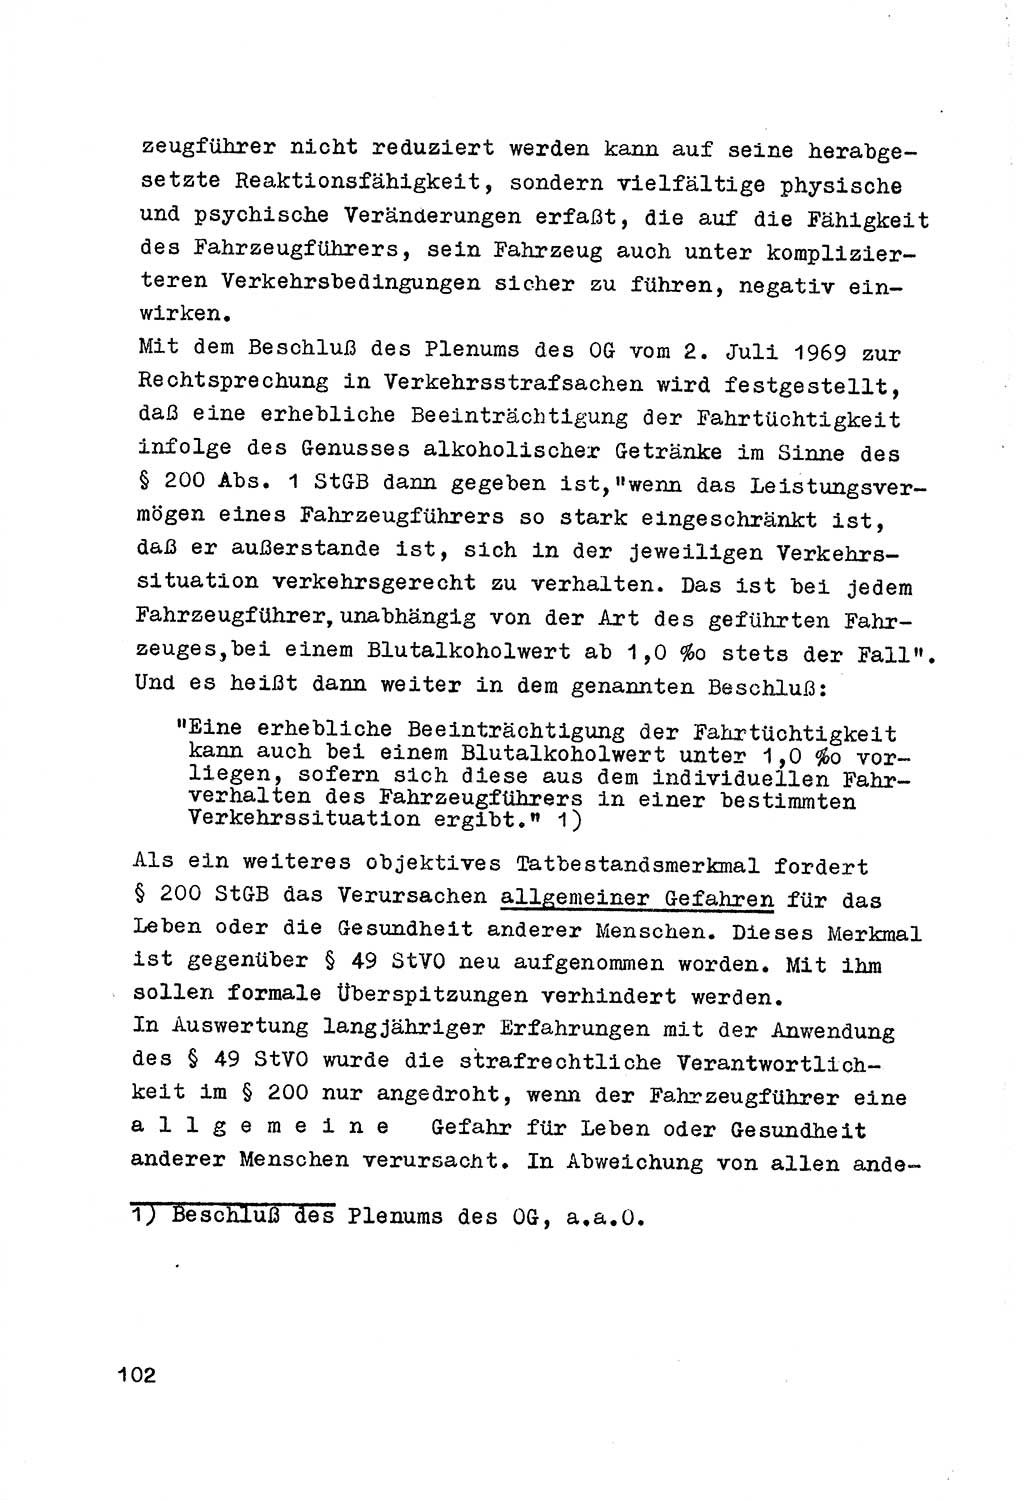 Strafrecht der DDR (Deutsche Demokratische Republik), Besonderer Teil, Lehrmaterial, Heft 7 1970, Seite 102 (Strafr. DDR BT Lehrmat. H. 7 1970, S. 102)